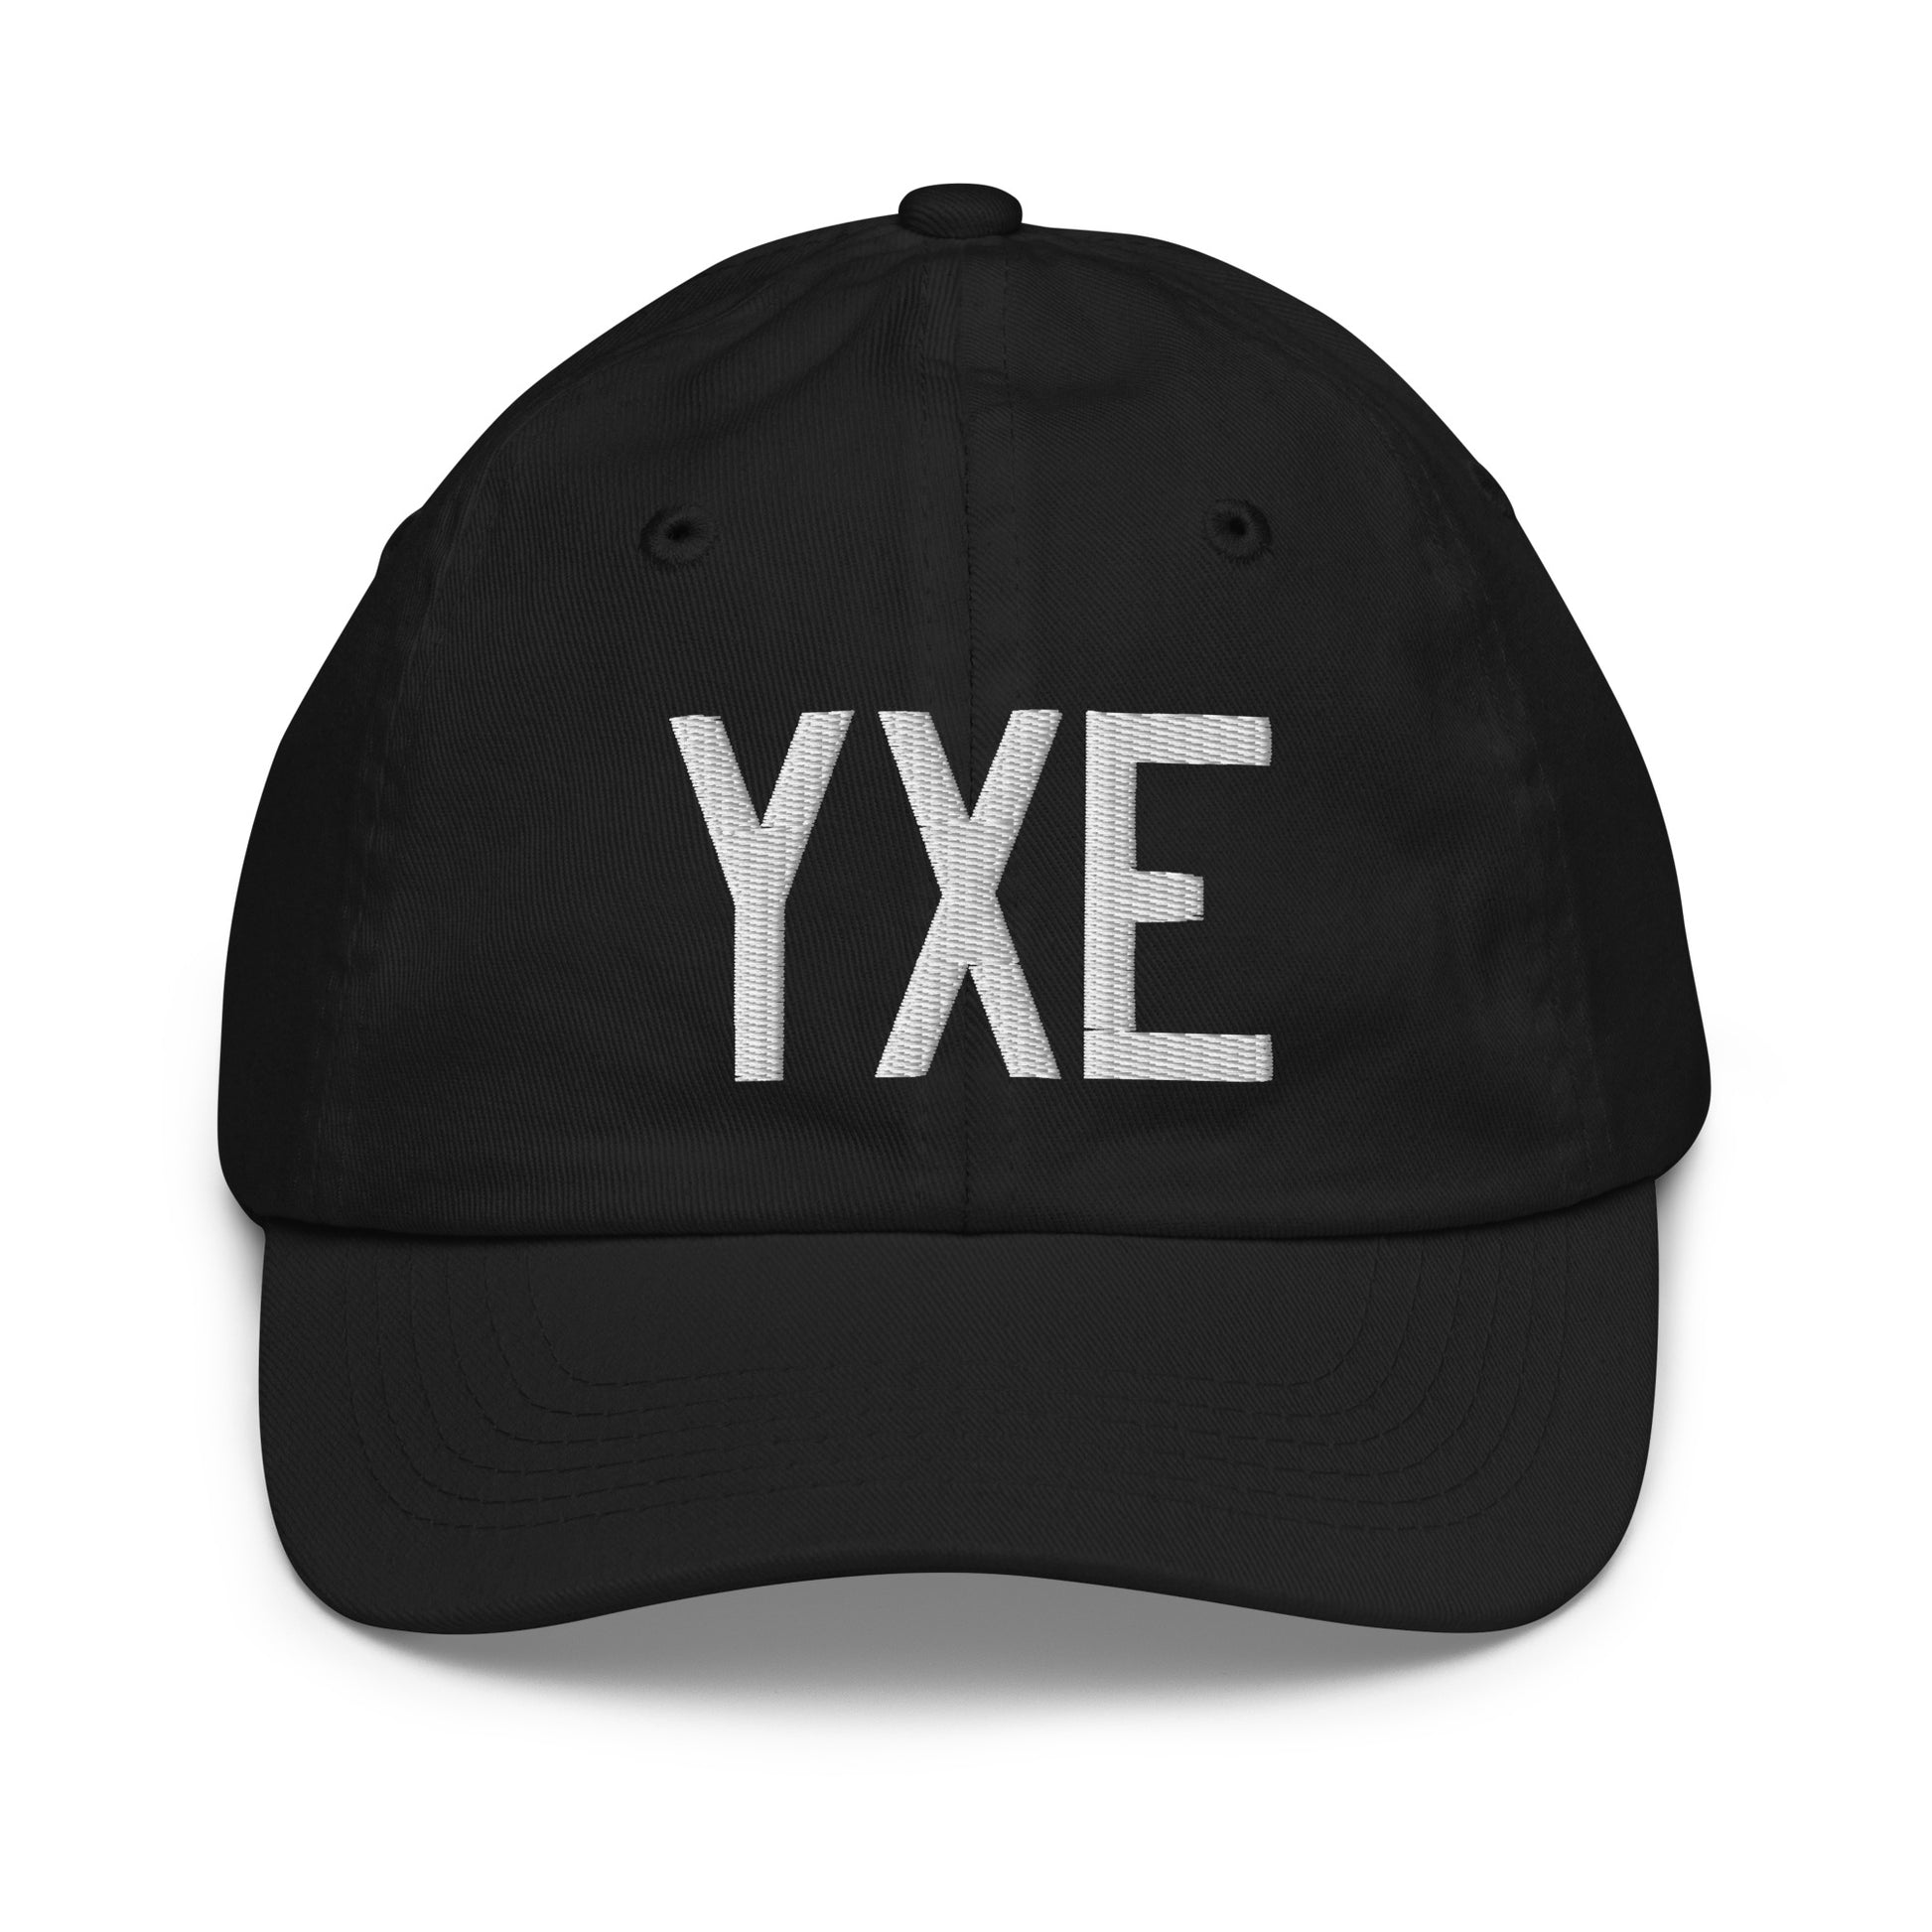 Airport Code Kid's Baseball Cap - White • YXE Saskatoon • YHM Designs - Image 11